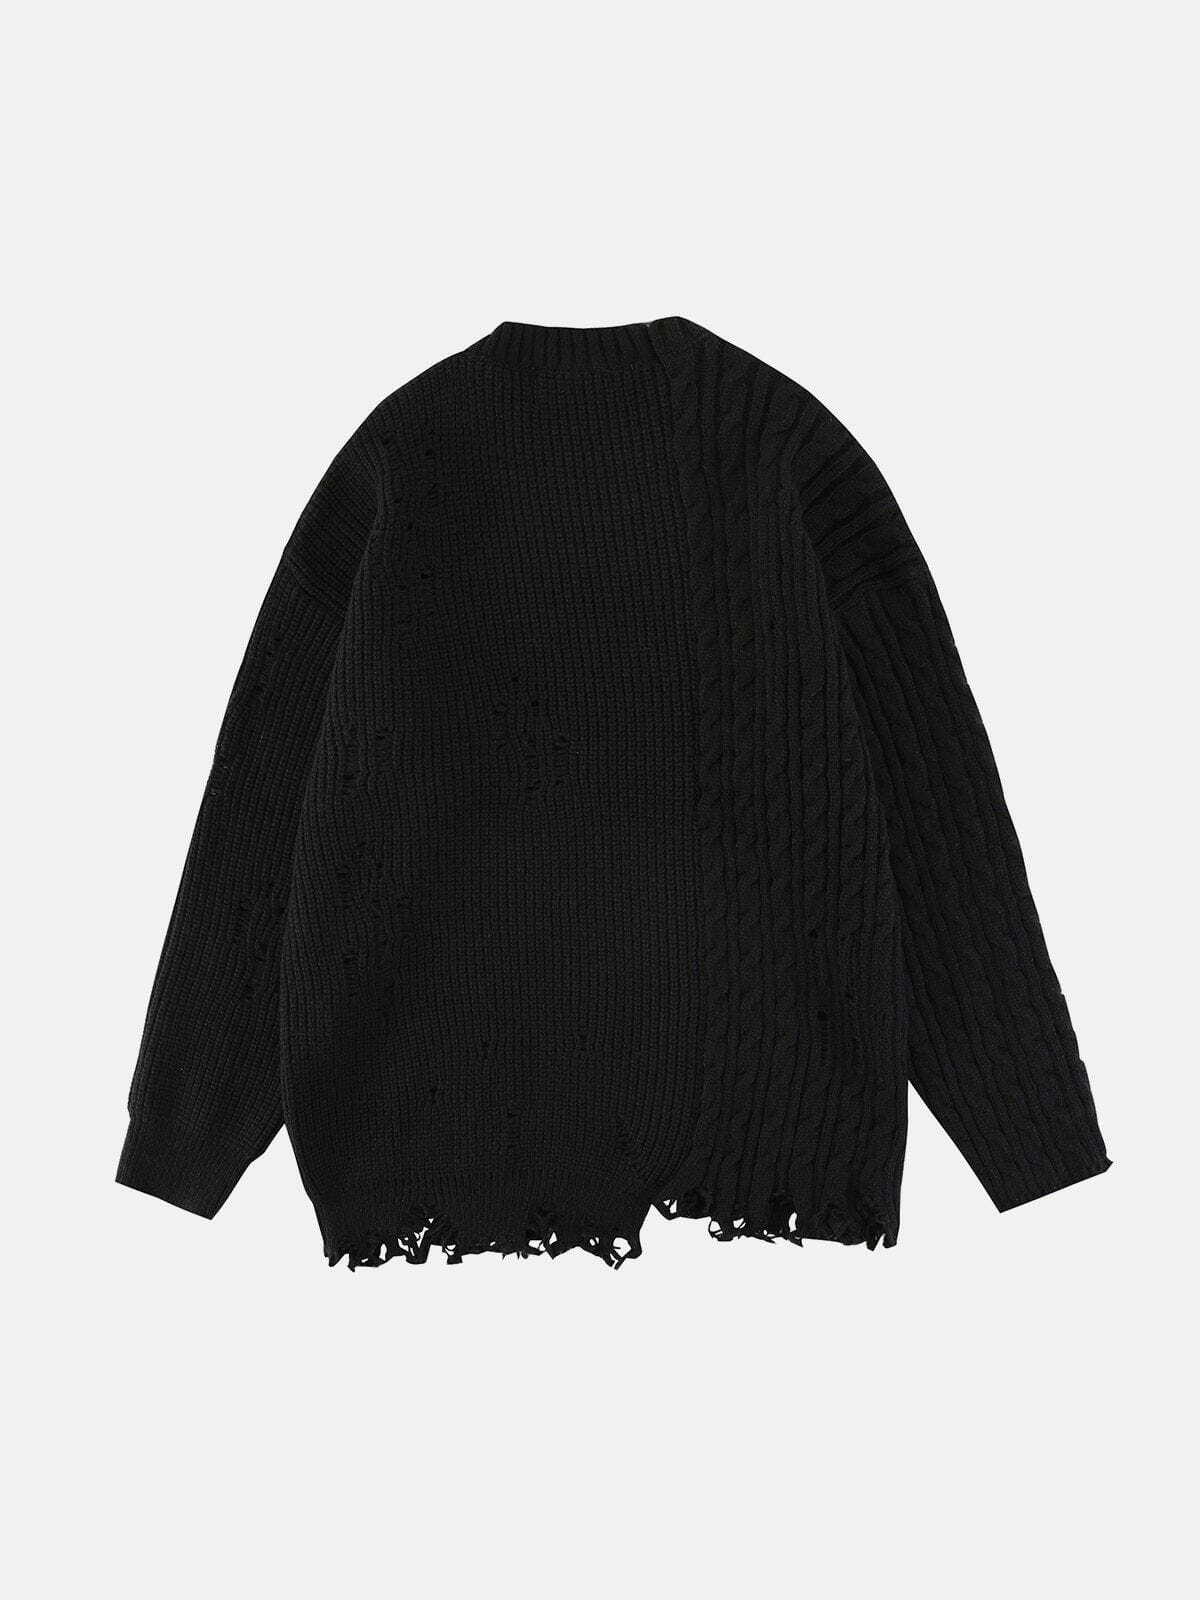 patchwork twist knit sweater edgy y2k streetwear 1016